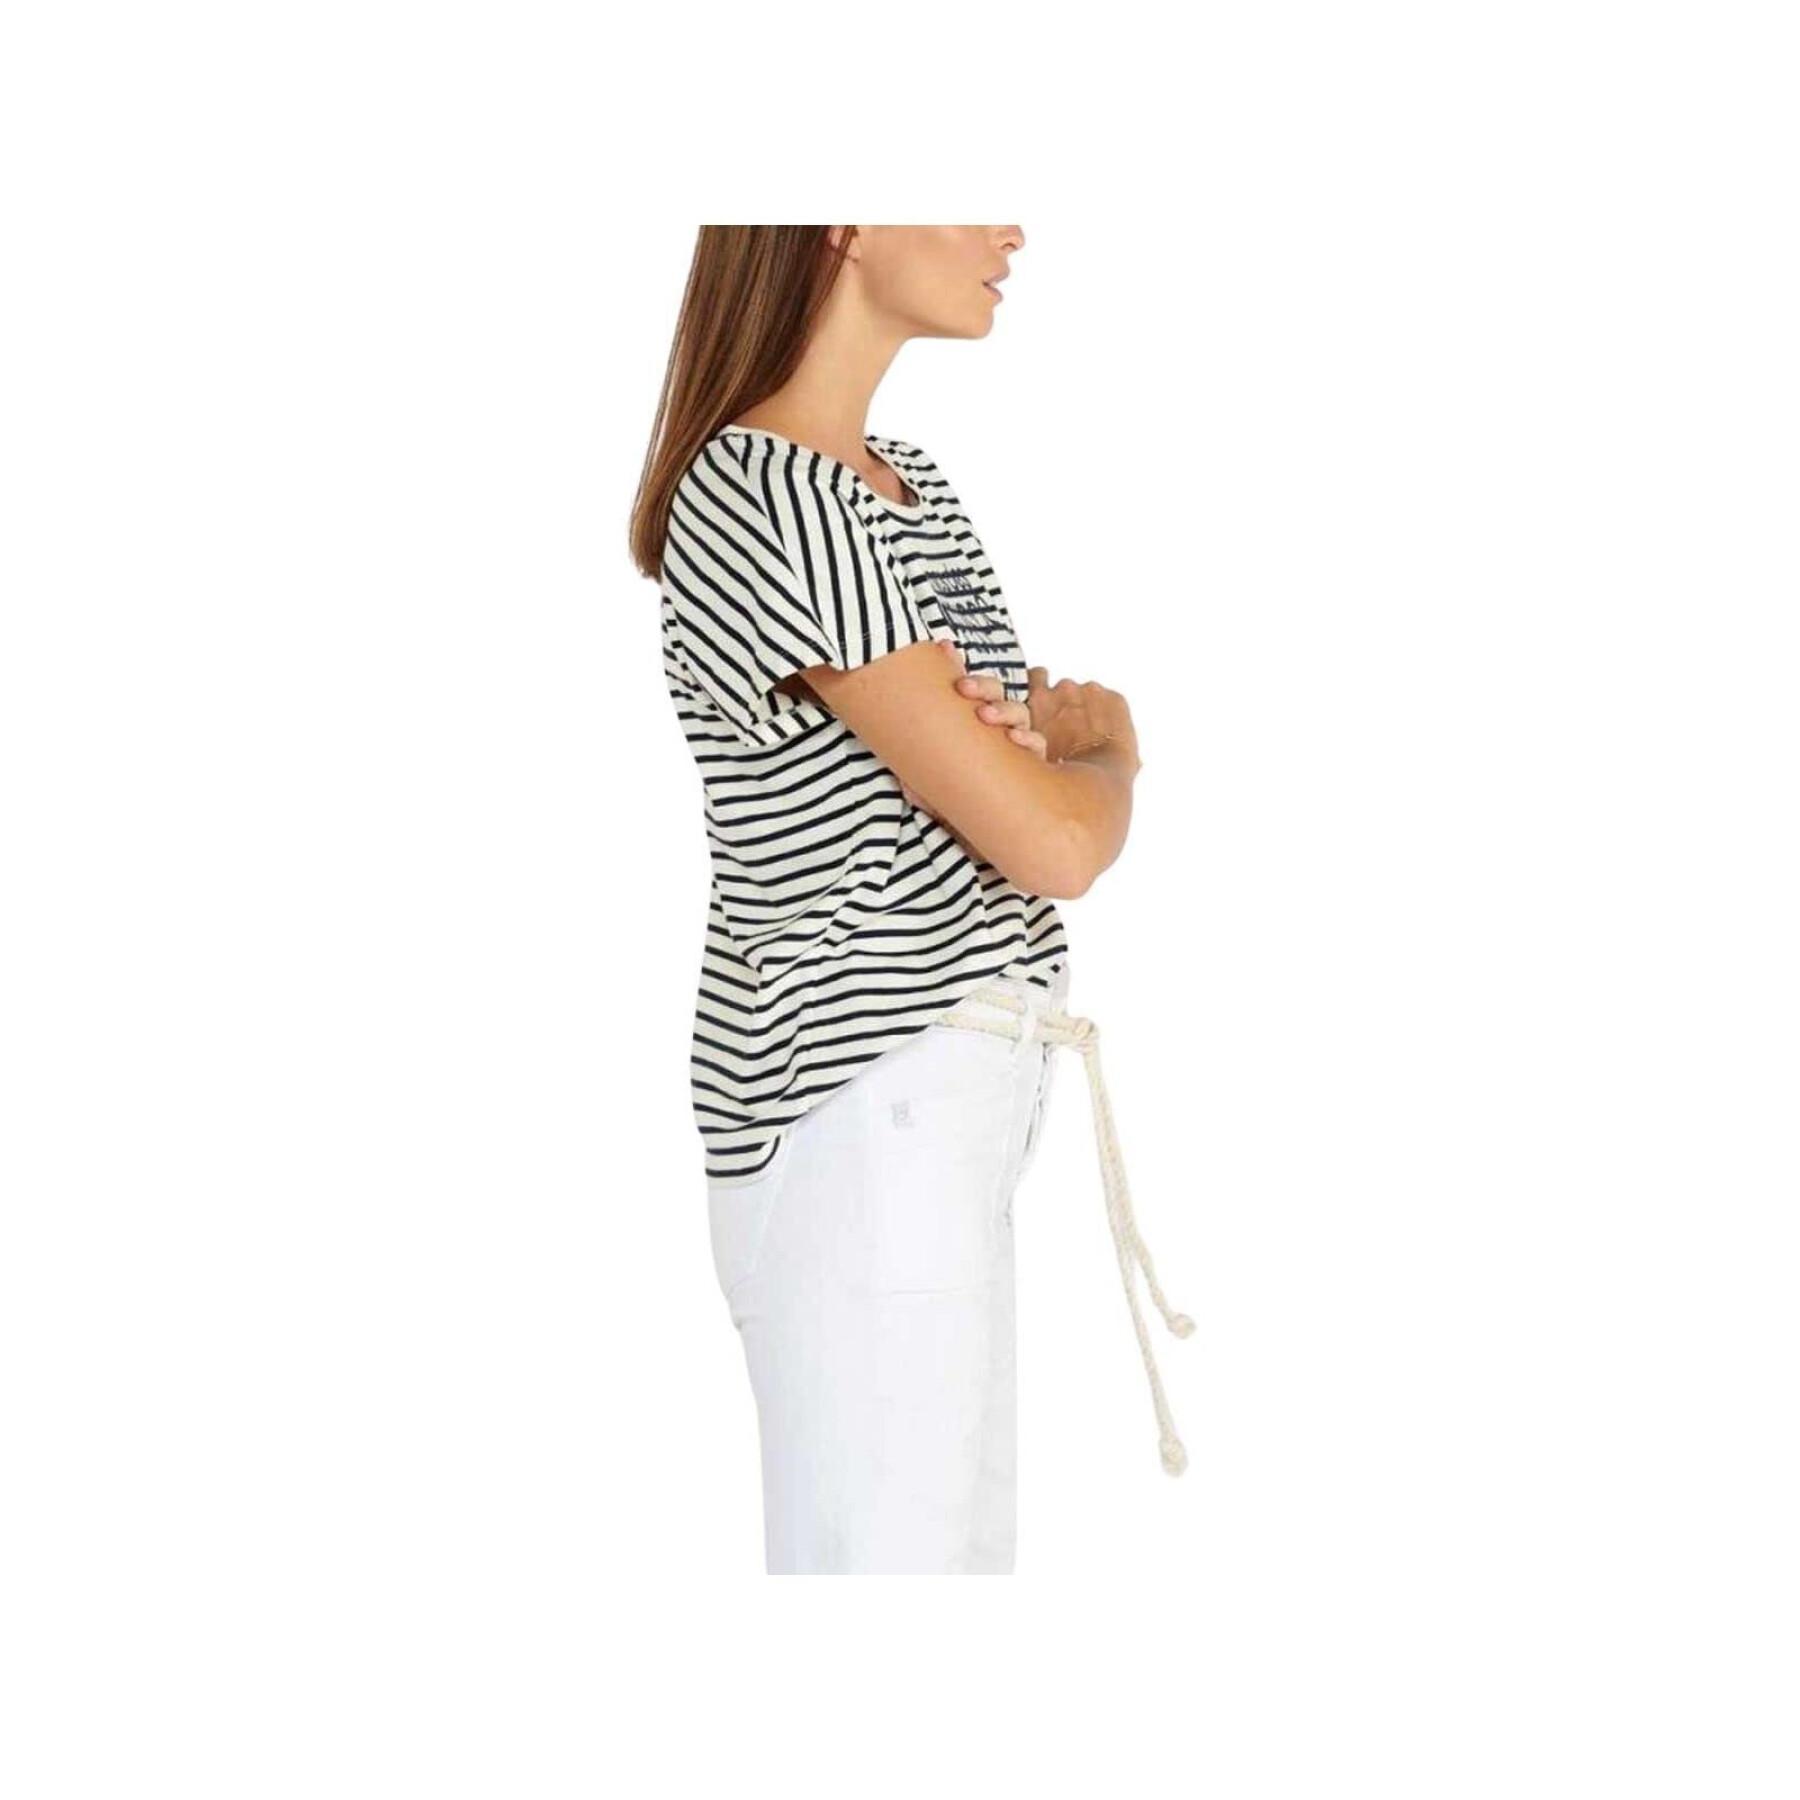 Women's short sleeve T-shirt Le Temps des cerises Sailor